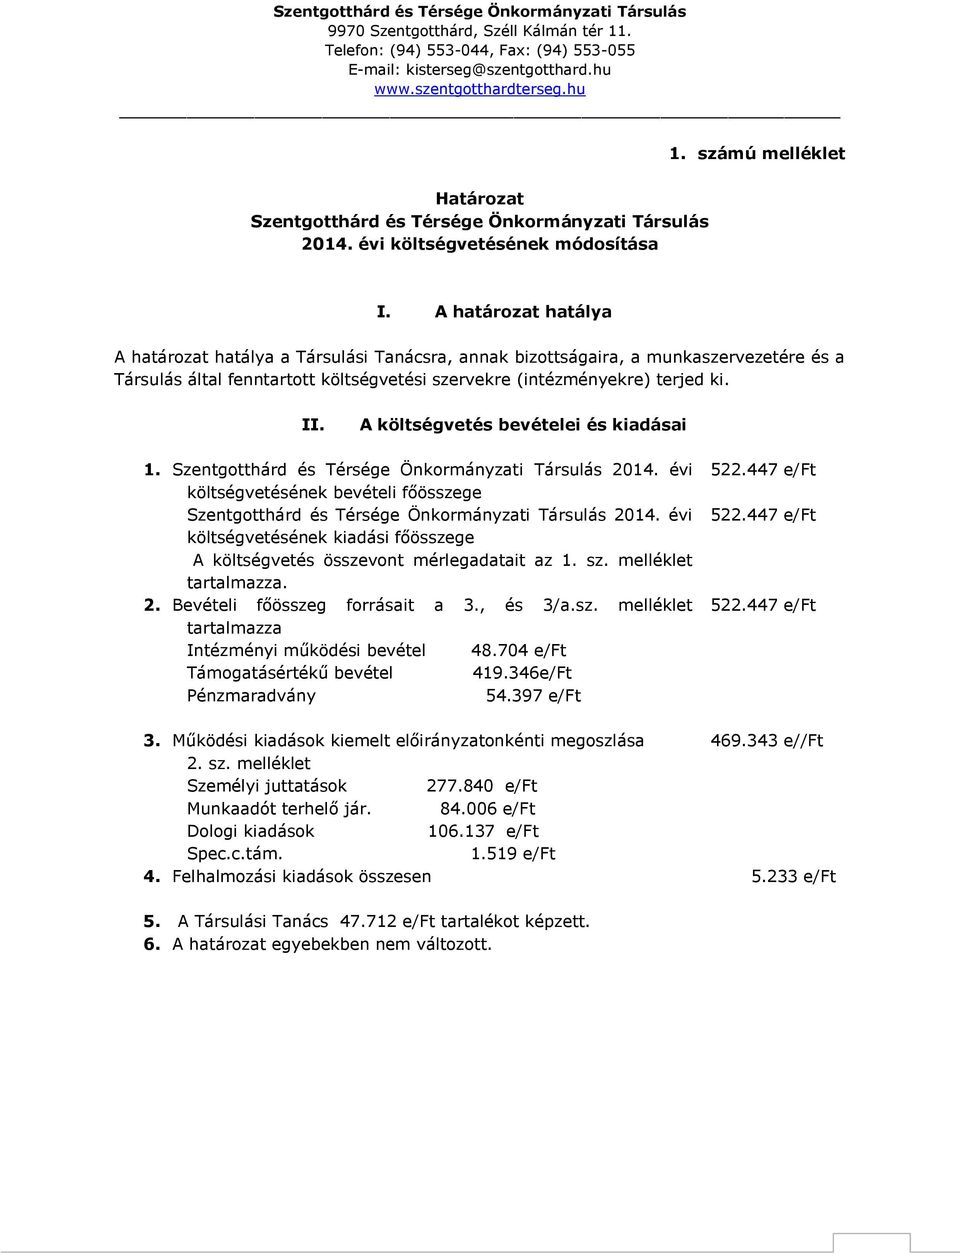 A költségvetés bevételei és kiadásai 1. Szentgotthárd és Térsége Önkormányzati Társulás 2014. évi költségvetésének bevételi főösszege Szentgotthárd és Térsége Önkormányzati Társulás 2014.